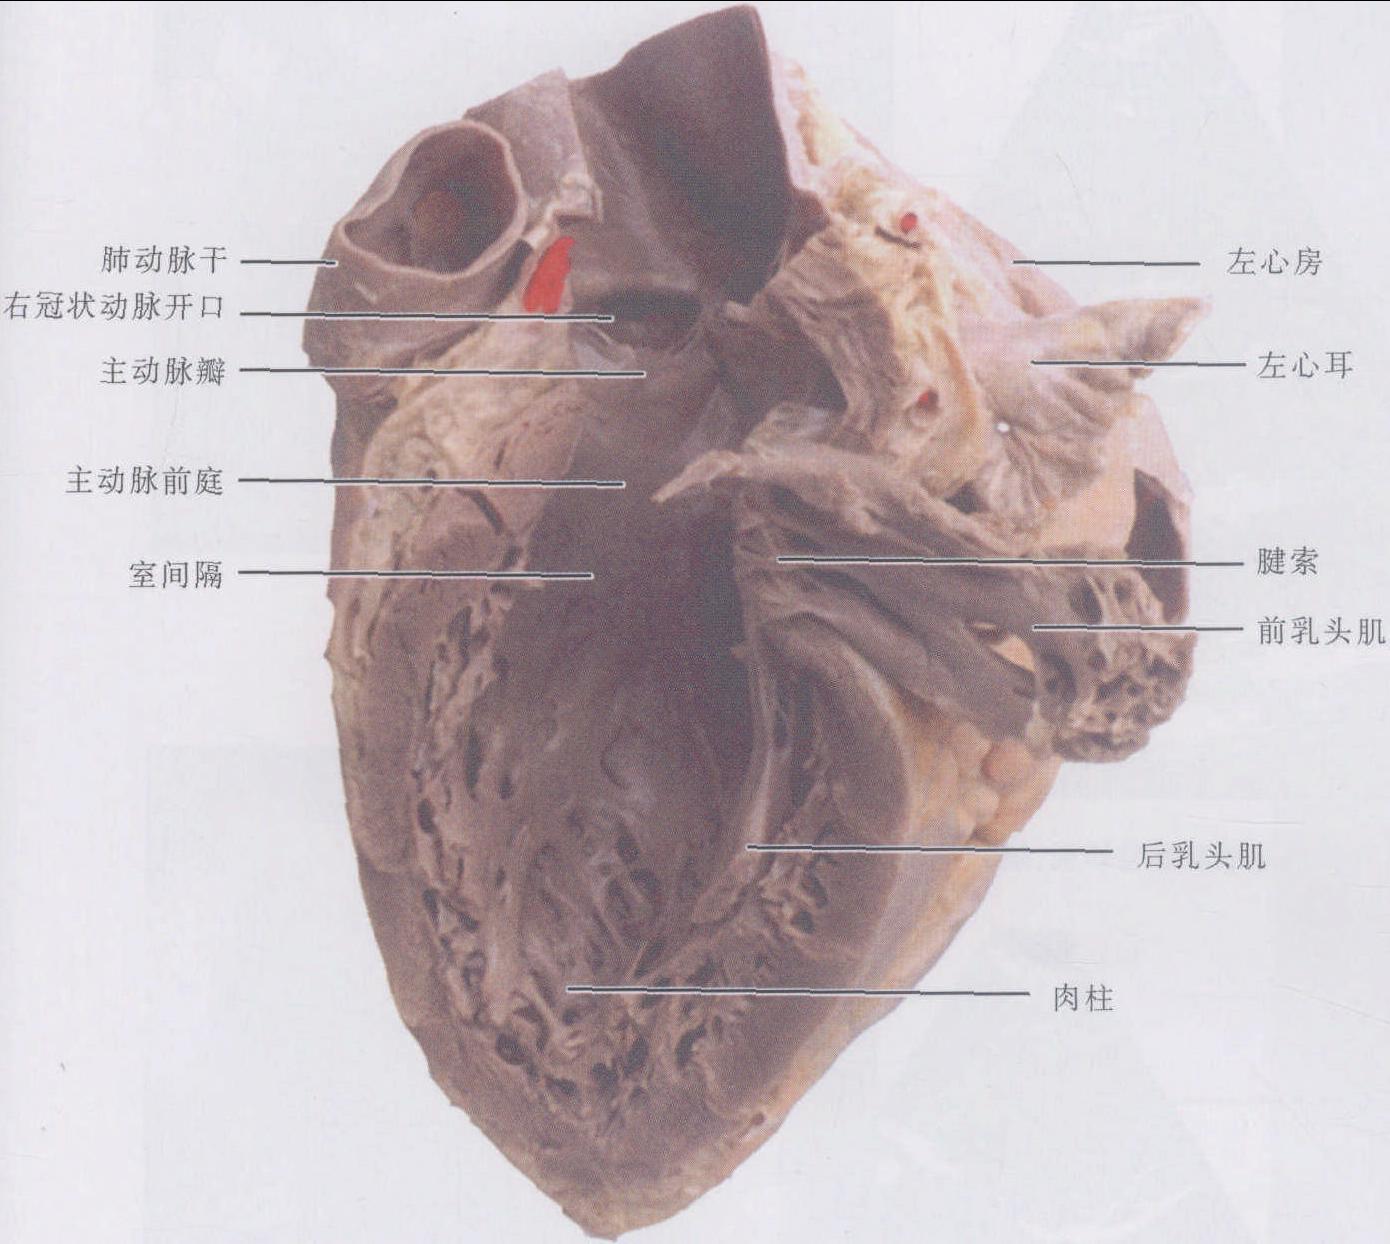 心臓について | 心臓弁膜症や動悸、息切れなどの心臓疾患の漢方治療専門ページ 漢方薬局 新宿太陽堂